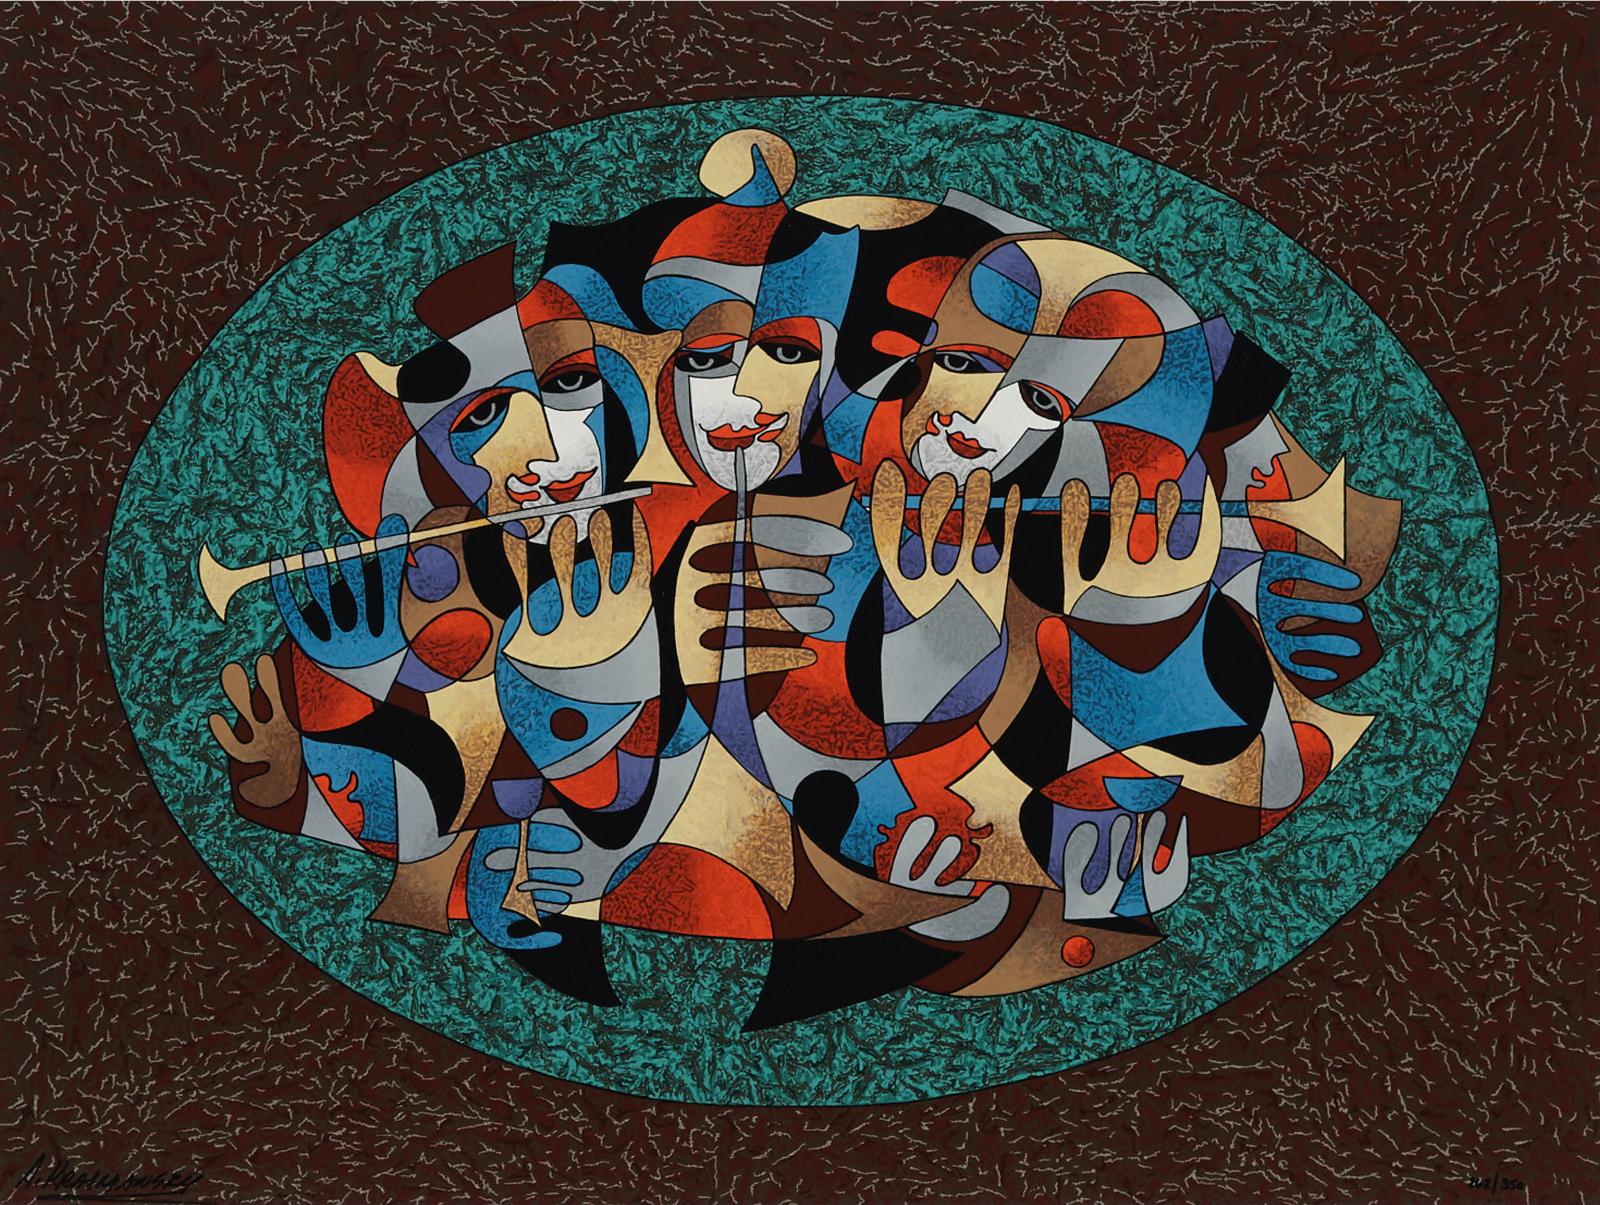 Anatole Krasnyansky (1930) - Musicians